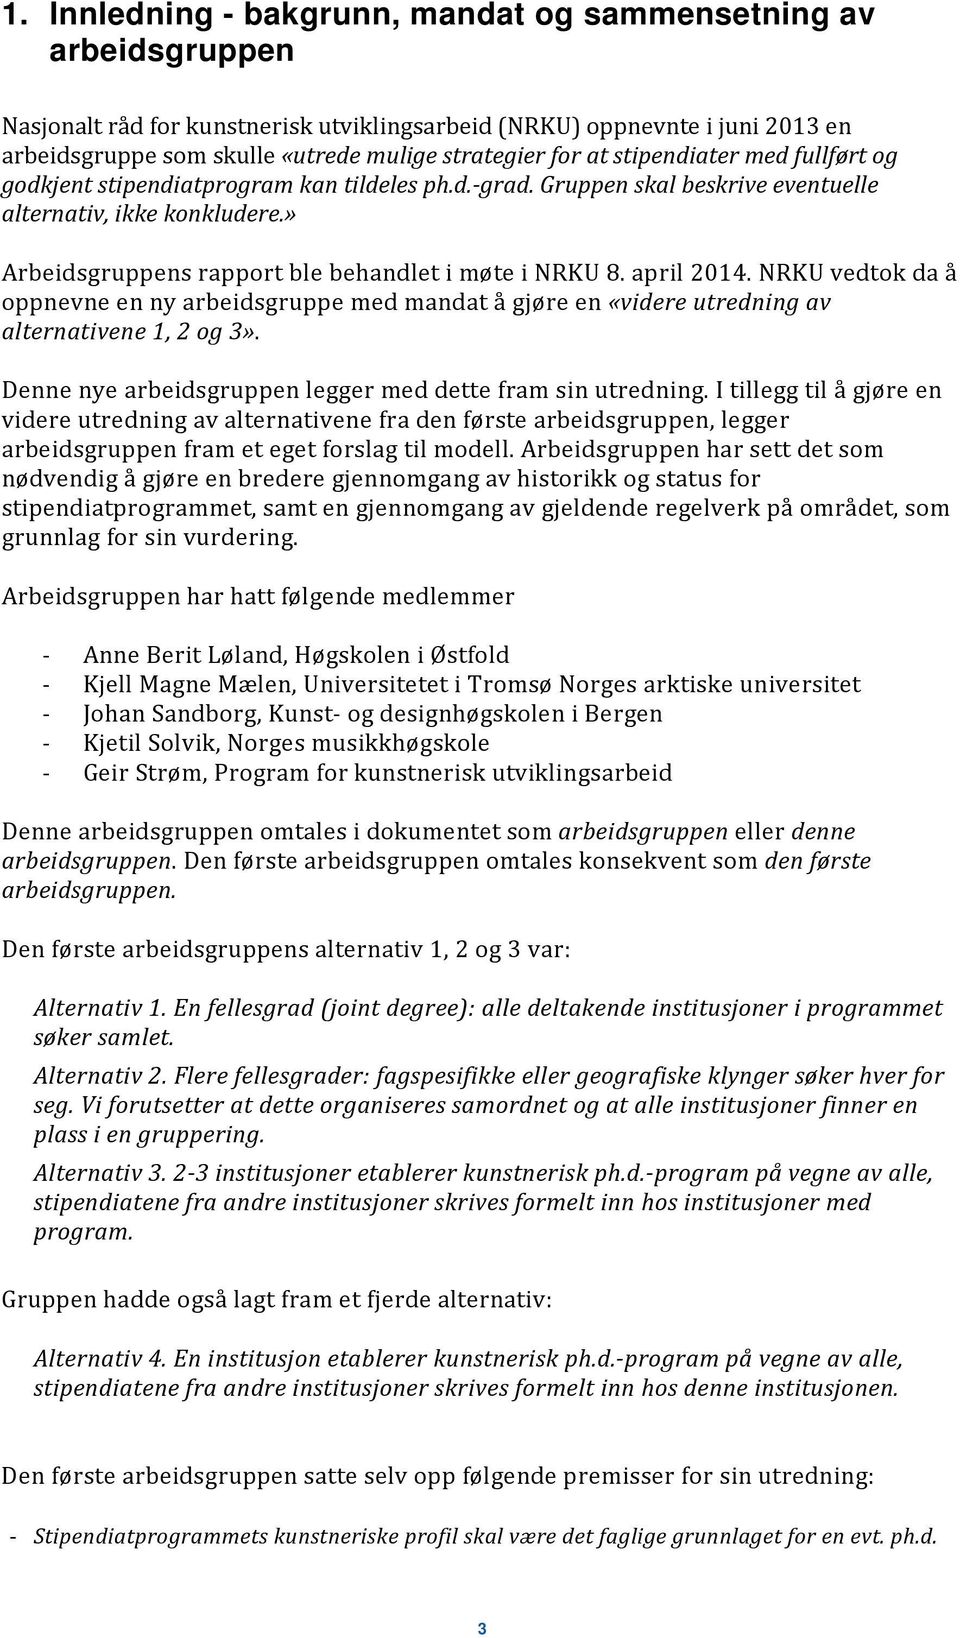 » Arbeidsgruppens rapport ble behandlet i møte i NRKU 8. april 2014. NRKU vedtok da å oppnevne en ny arbeidsgruppe med mandat å gjøre en «videre utredning av alternativene 1, 2 og 3».